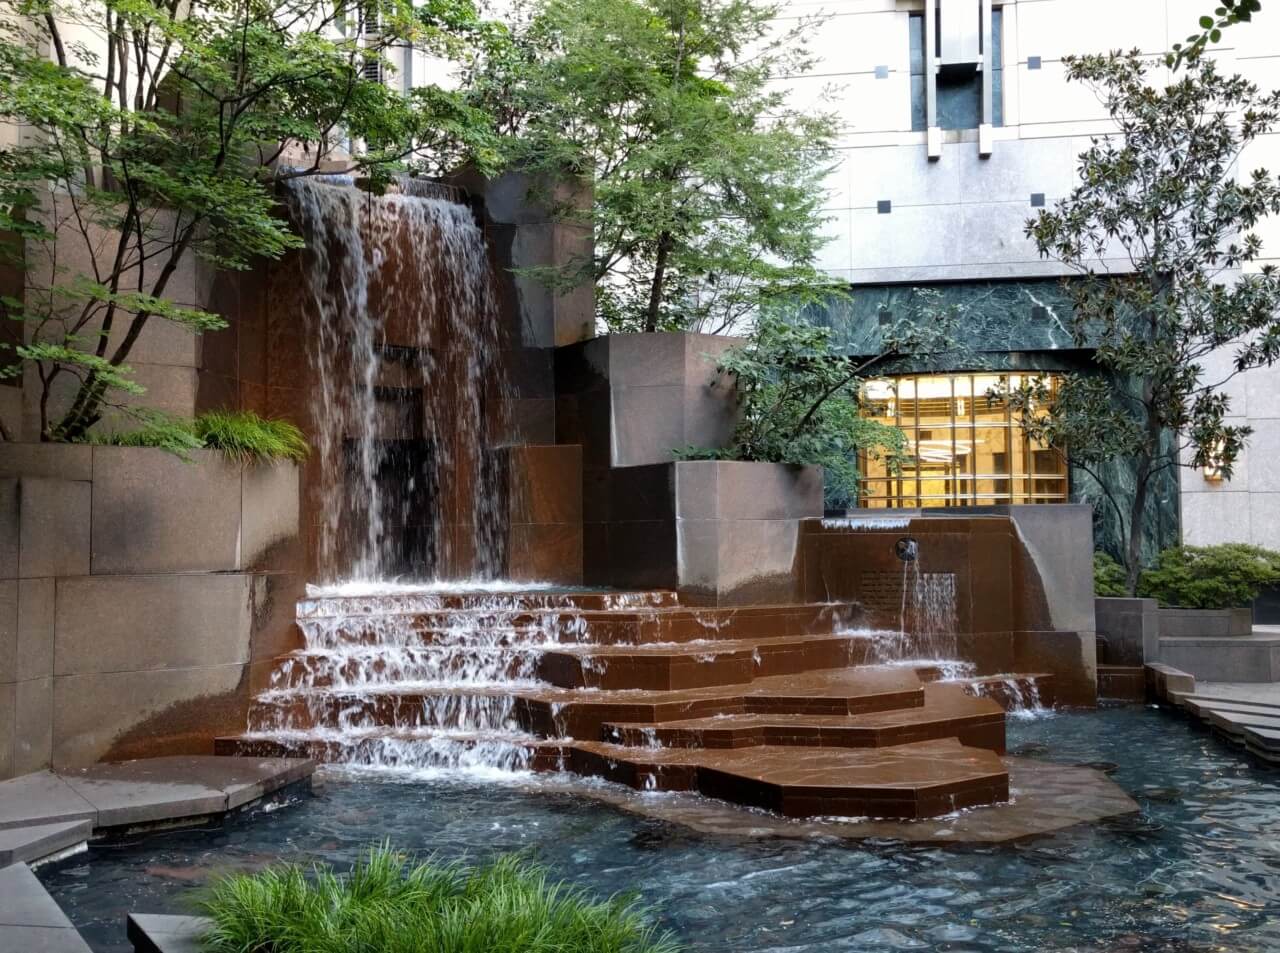 a fountain in an urban park